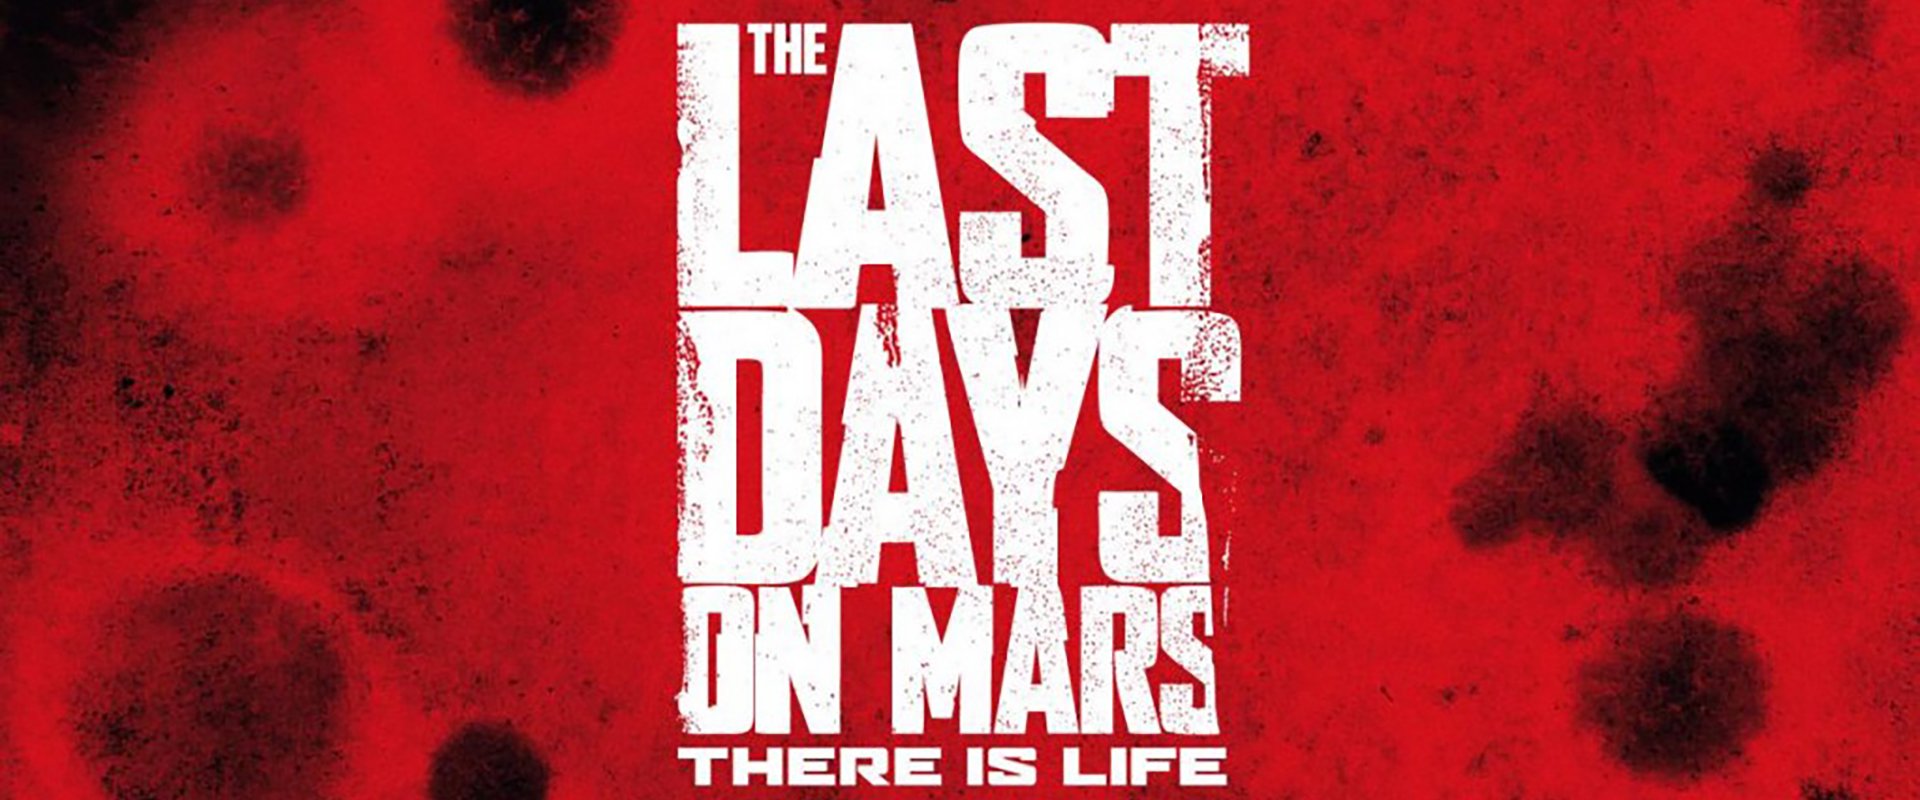 THE LAST DAYS ON MARS